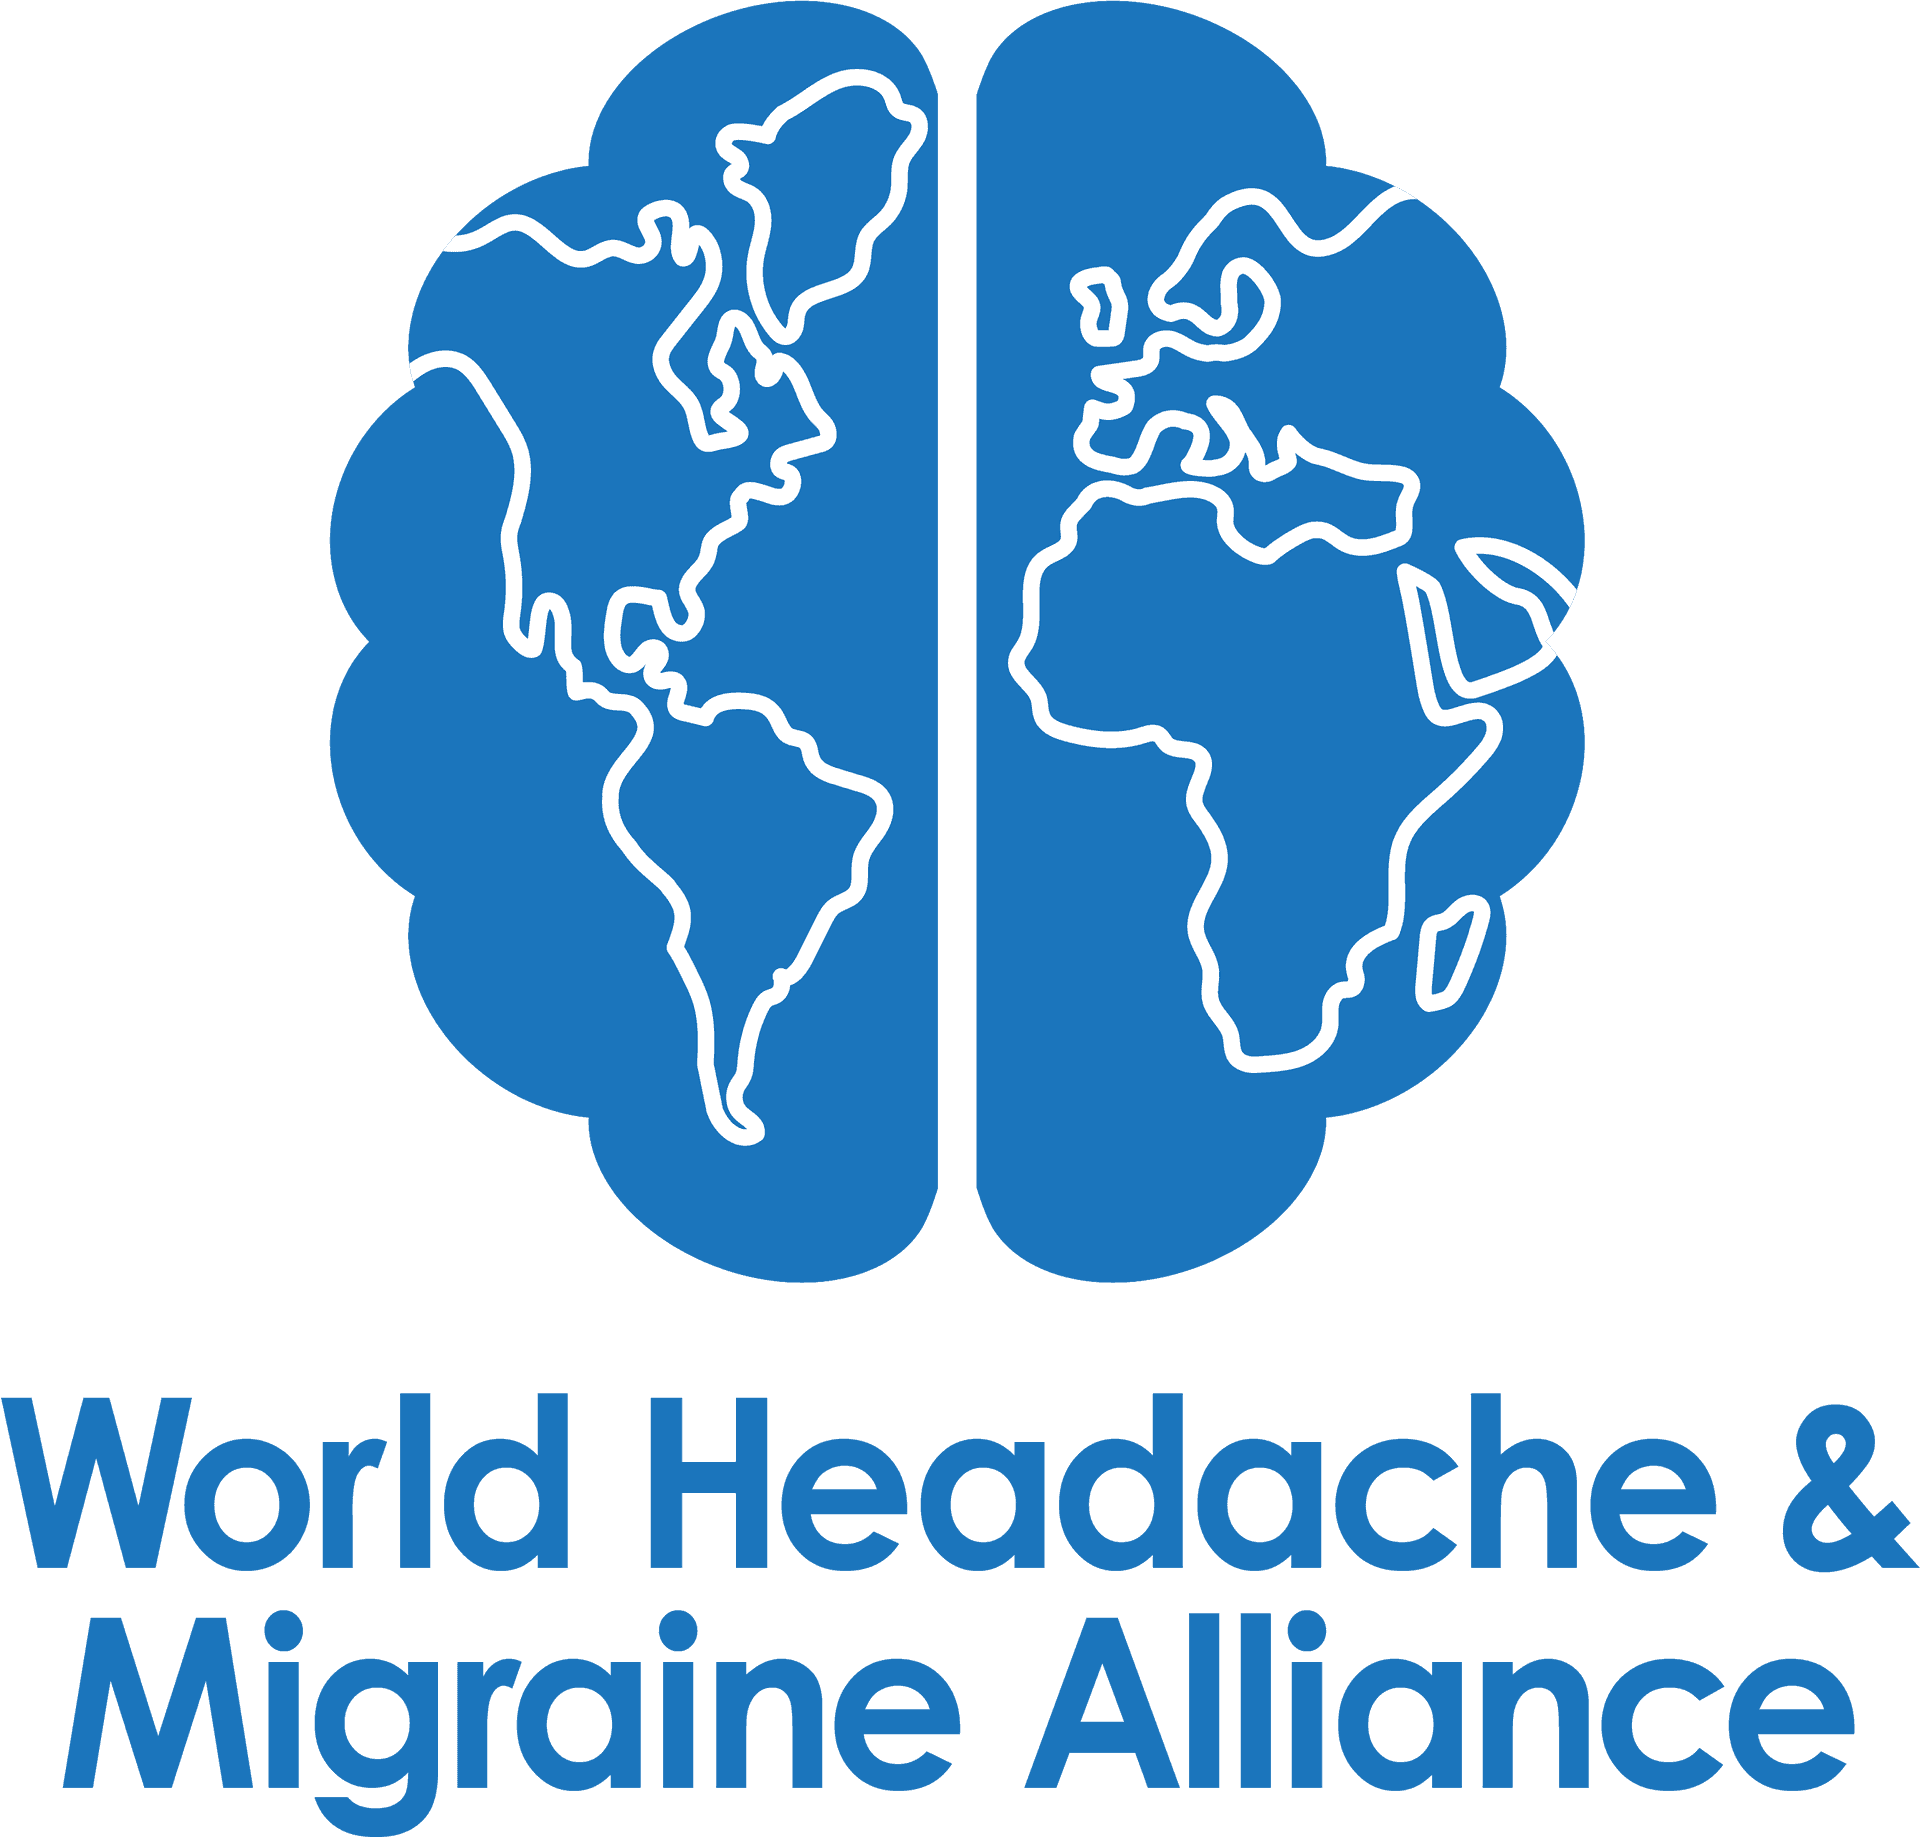 World Headache Migraine Alliance Logo PNG